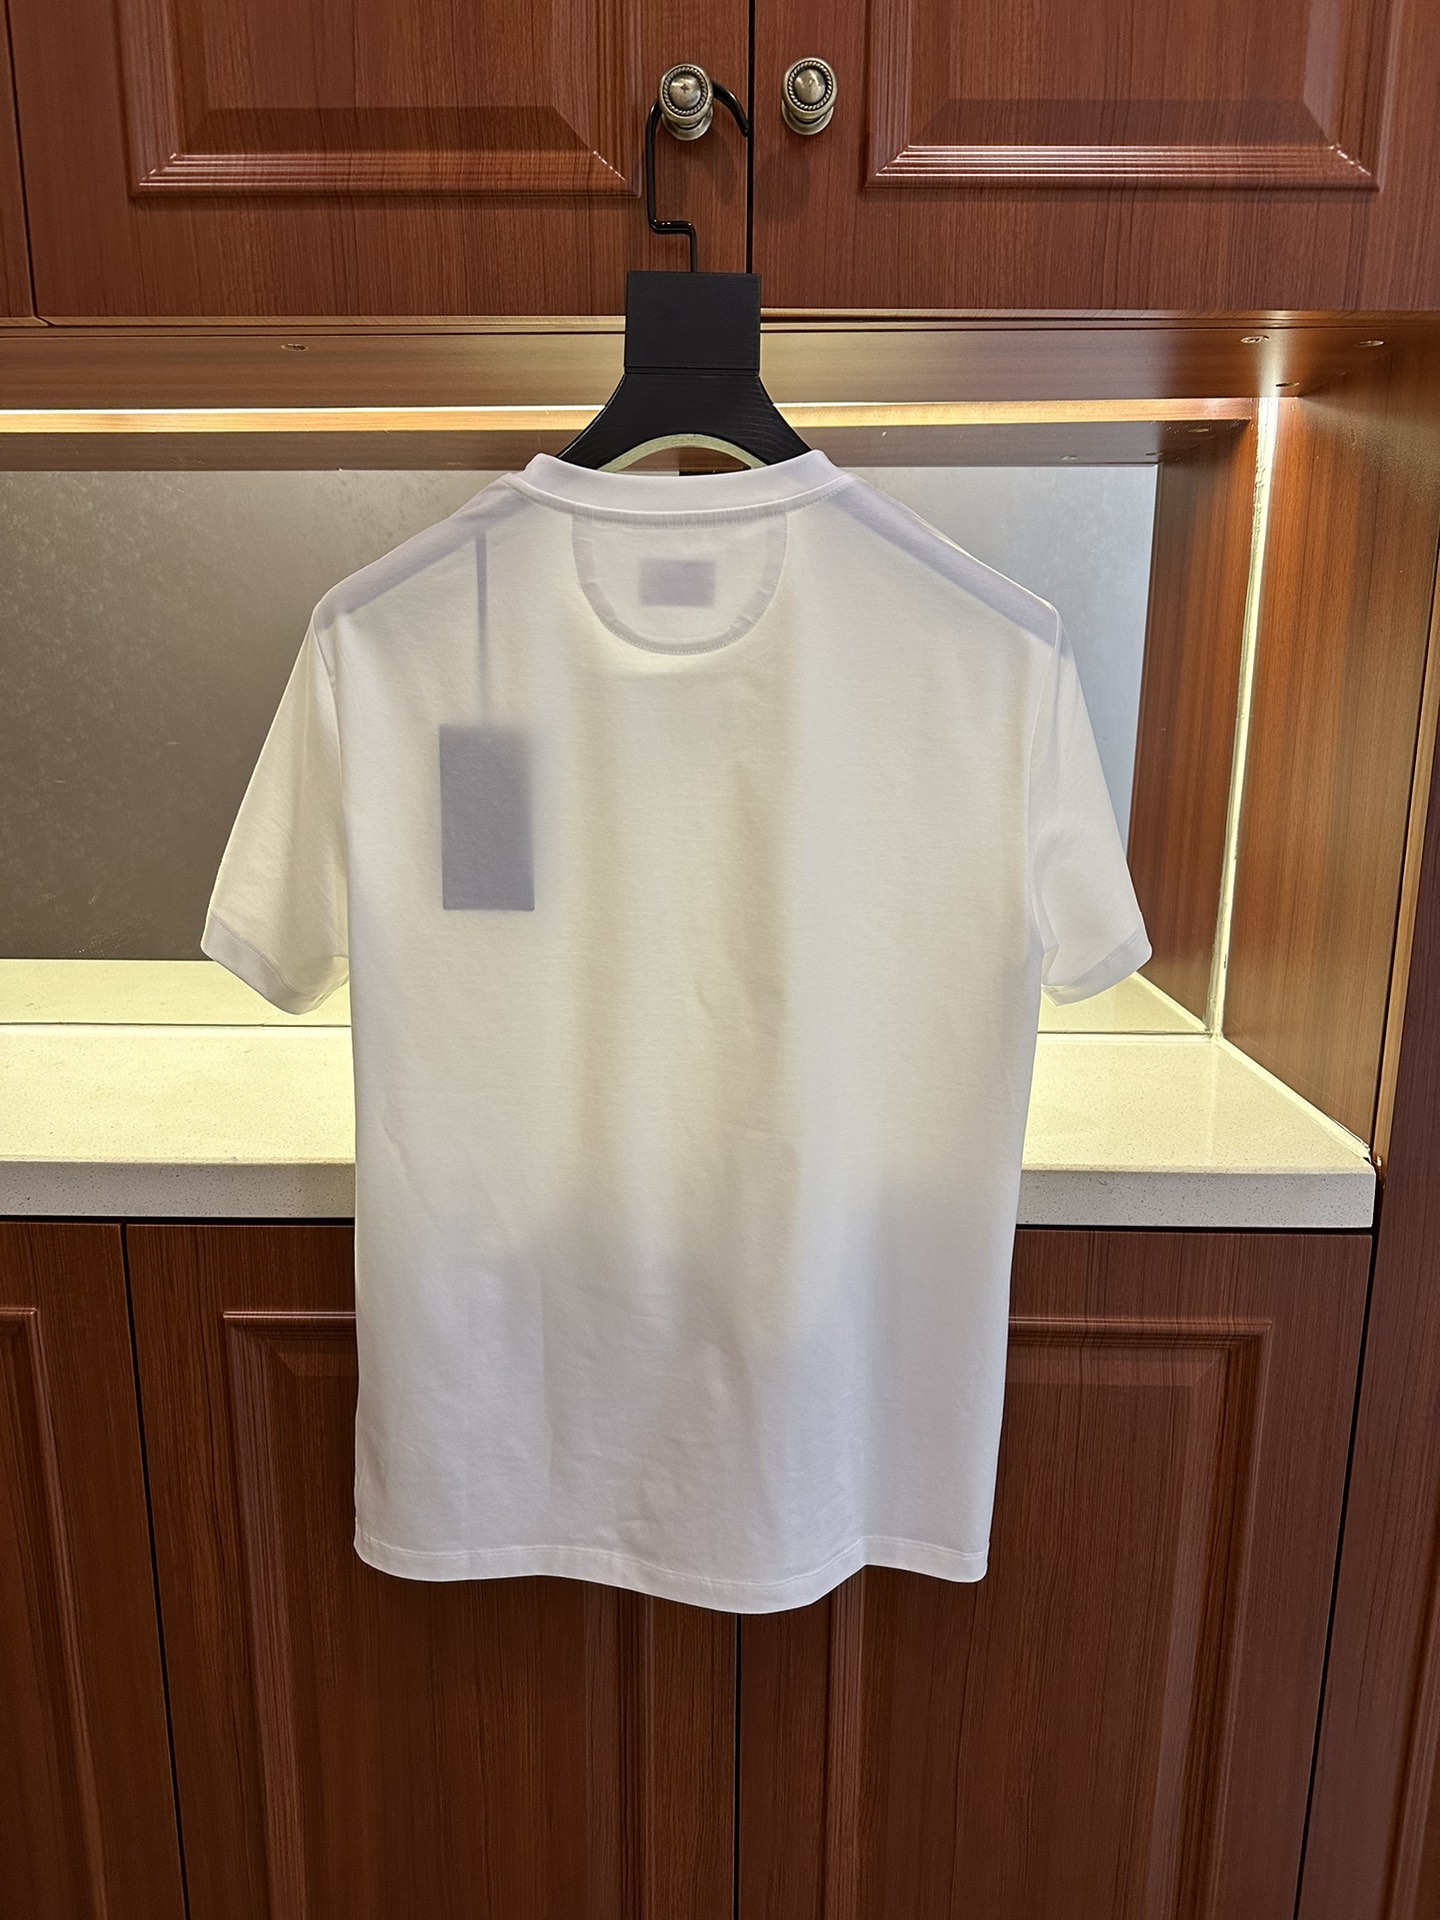 Replica Dockers Original Tee - Slim Fit T-Shirt